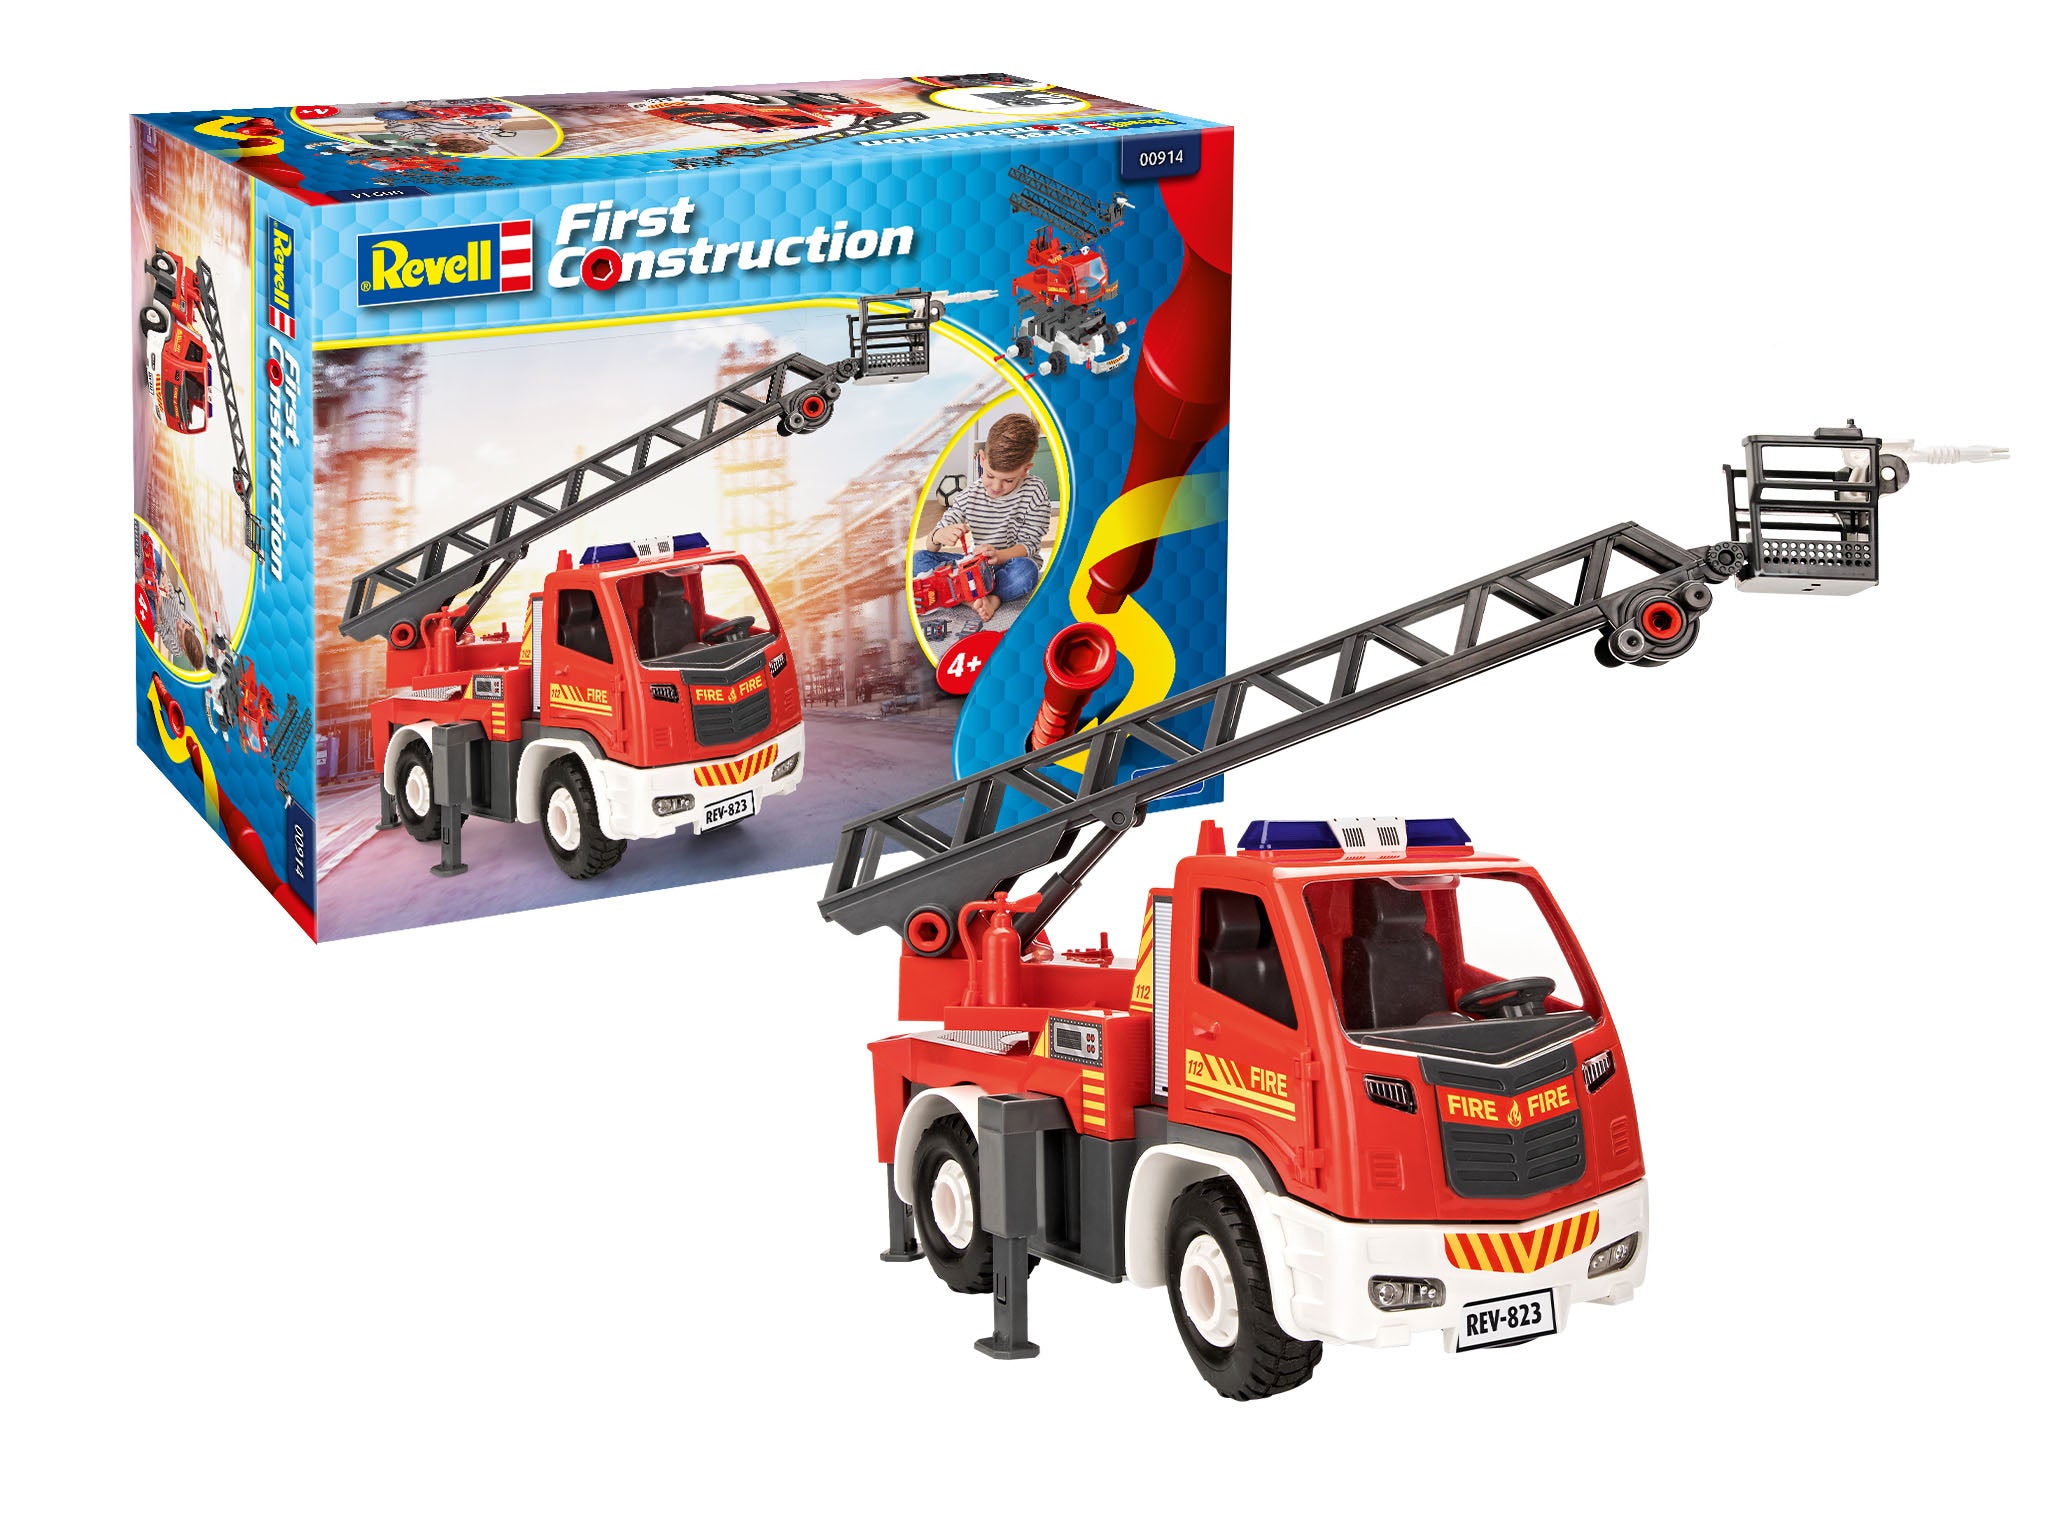 Truck Model Kit Revell Turntable Ladder Fire Truck 1:20